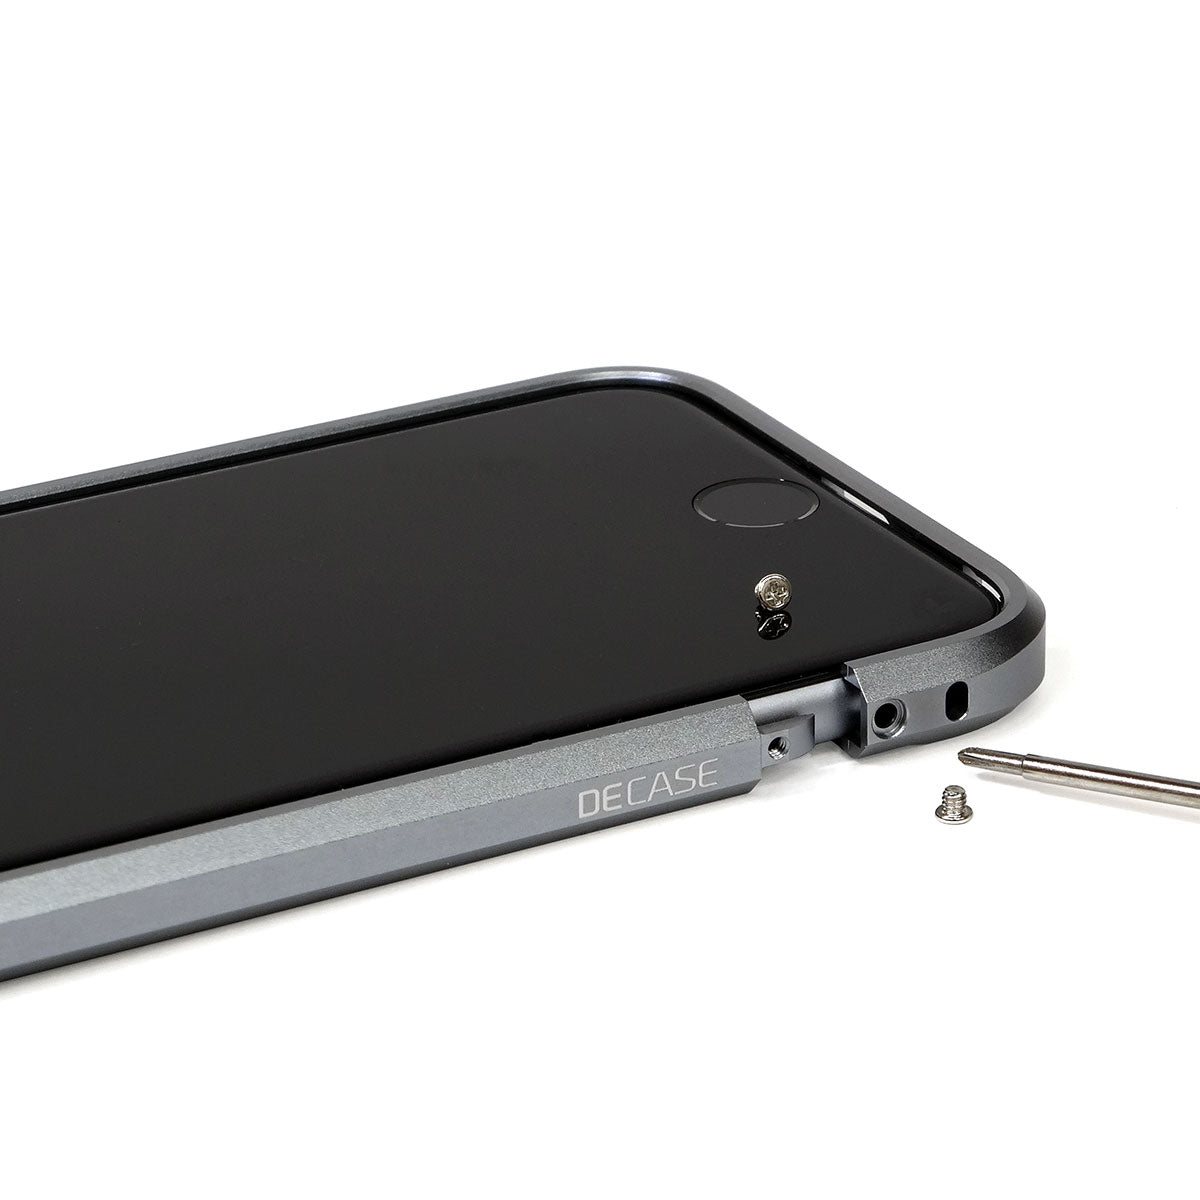  iPhone 6s Plus aluminum bumper case